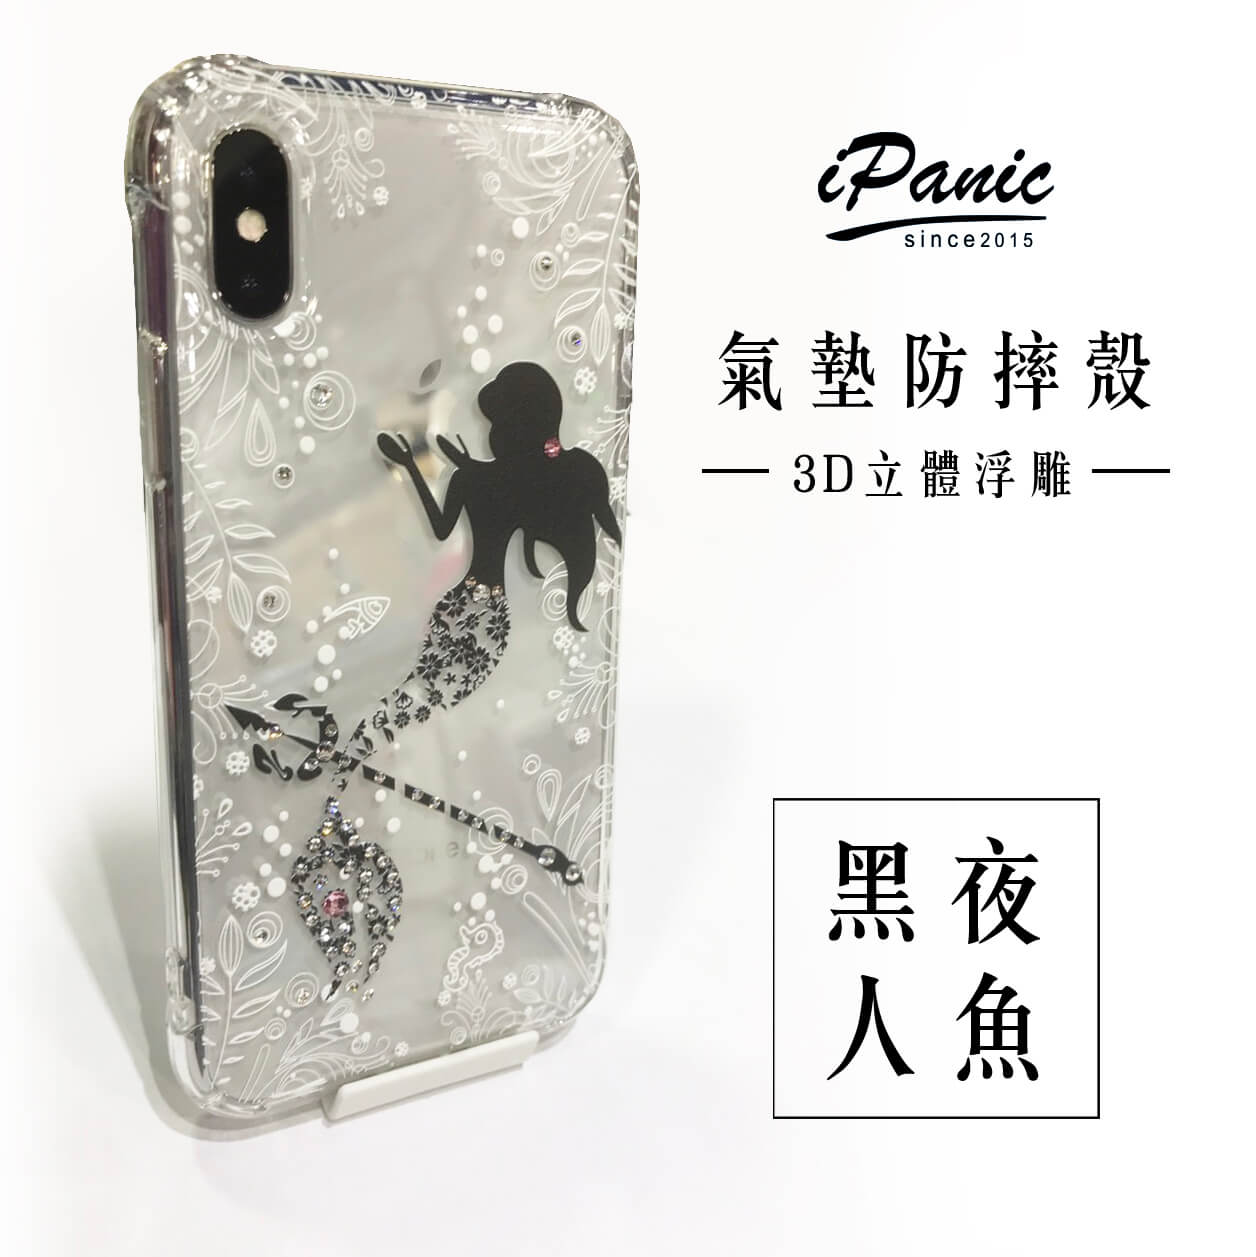 【超取免運】iPhone X iPhone8 iPhone7 plus 3D立體浮雕 水鑽手機殼 黑夜人魚 iPhone手機殼